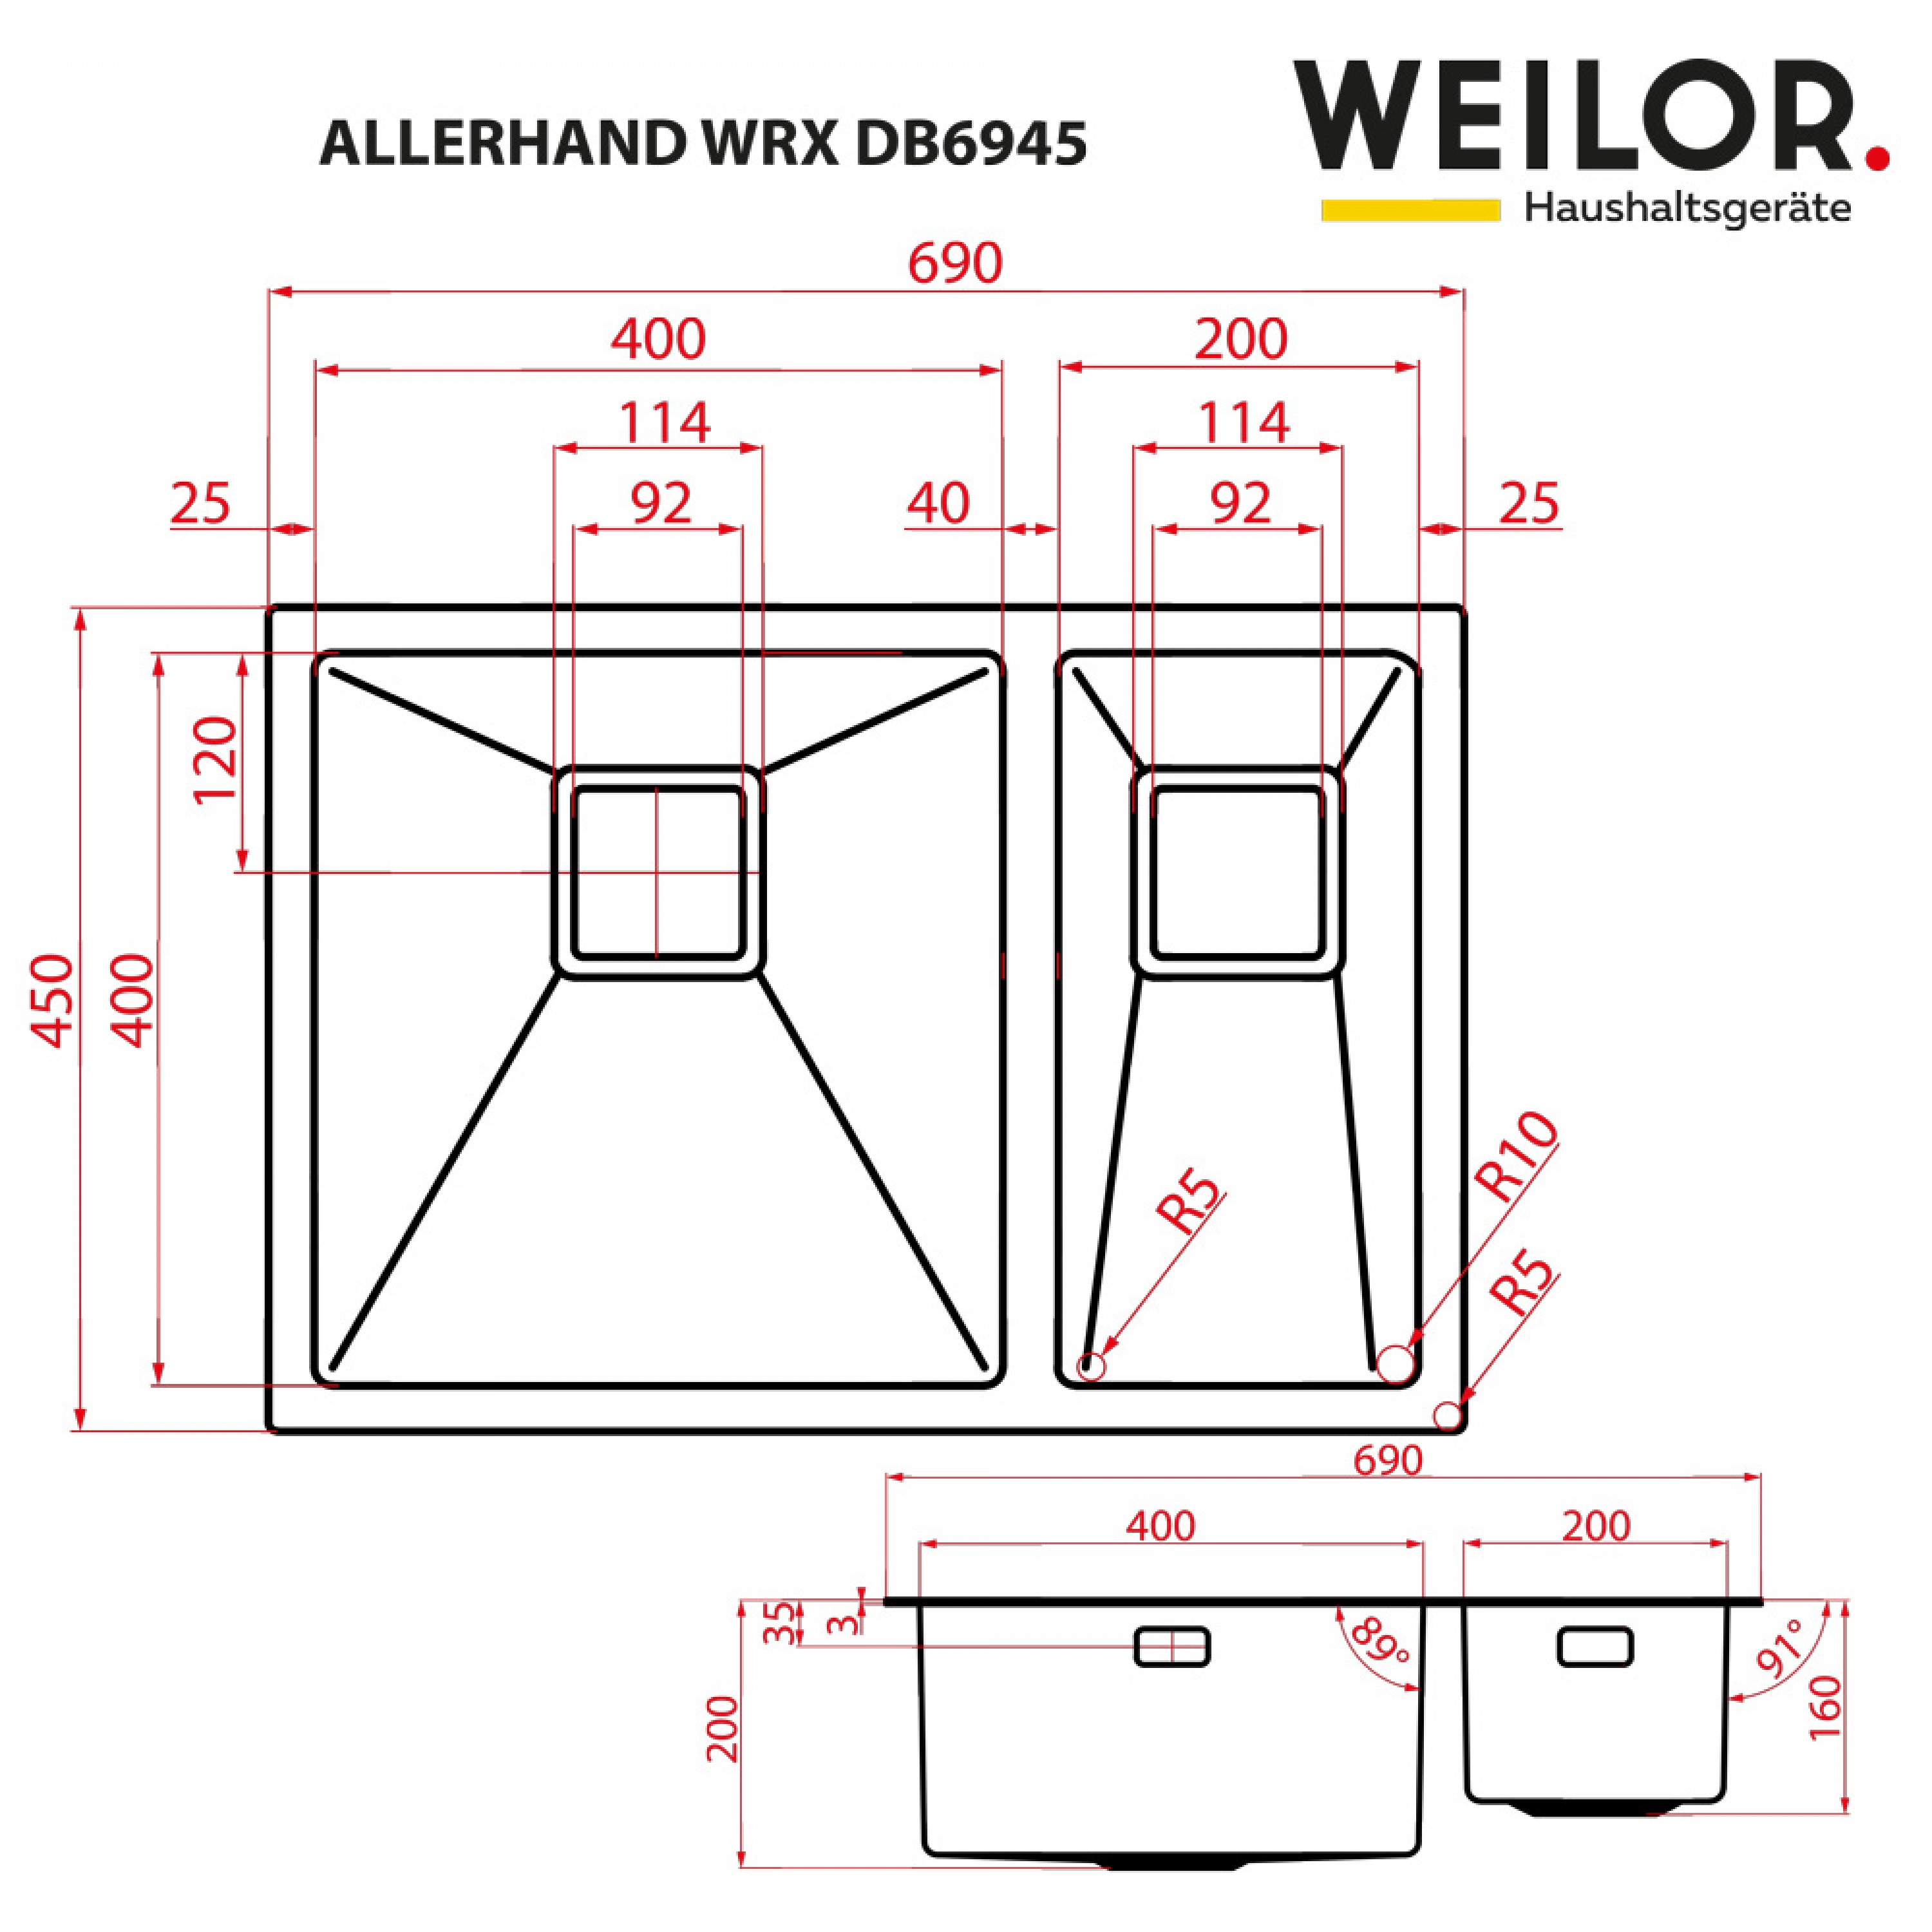 Weilor ALLERHAND WRX DB6945 Габаритные размеры